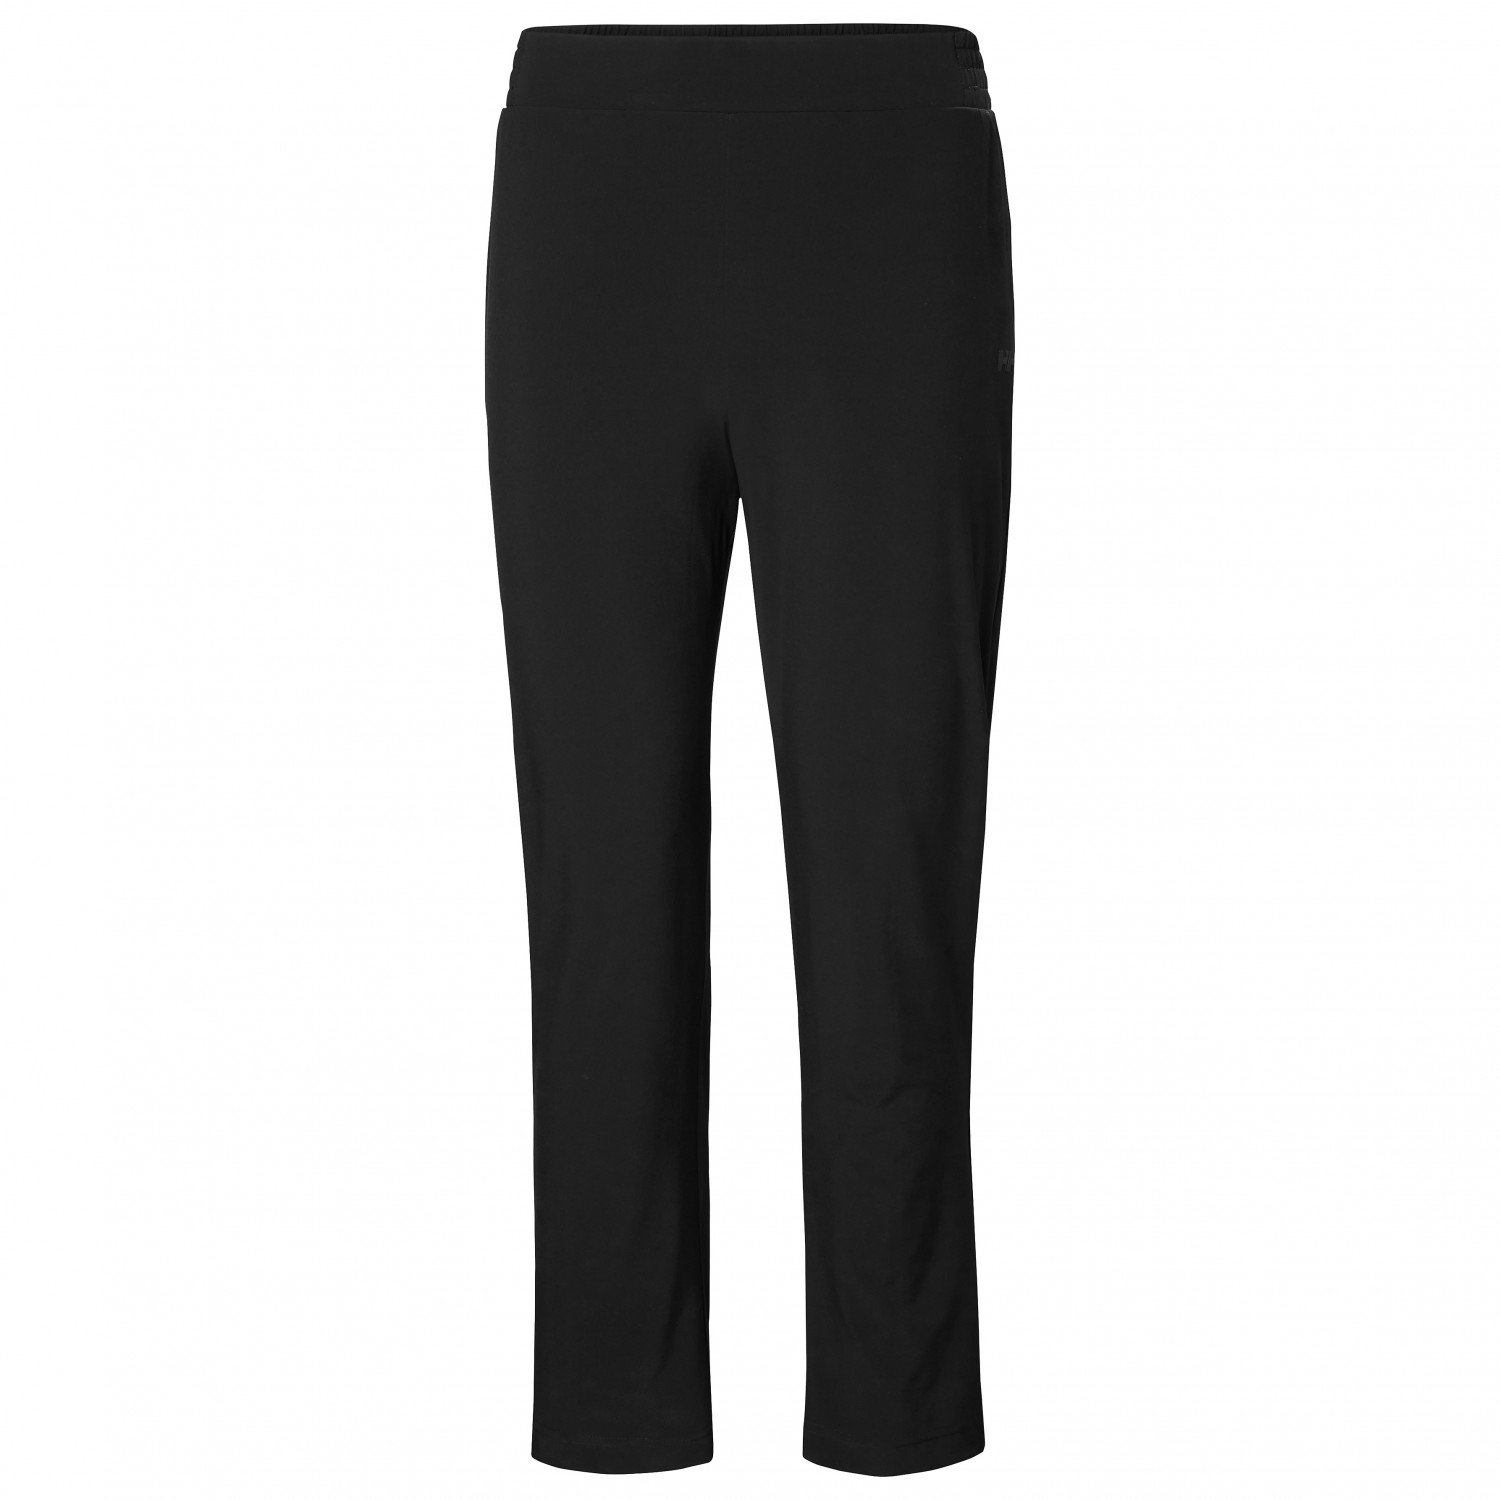 Повседневные брюки Helly Hansen Women's Thalia Pant 2 0, черный